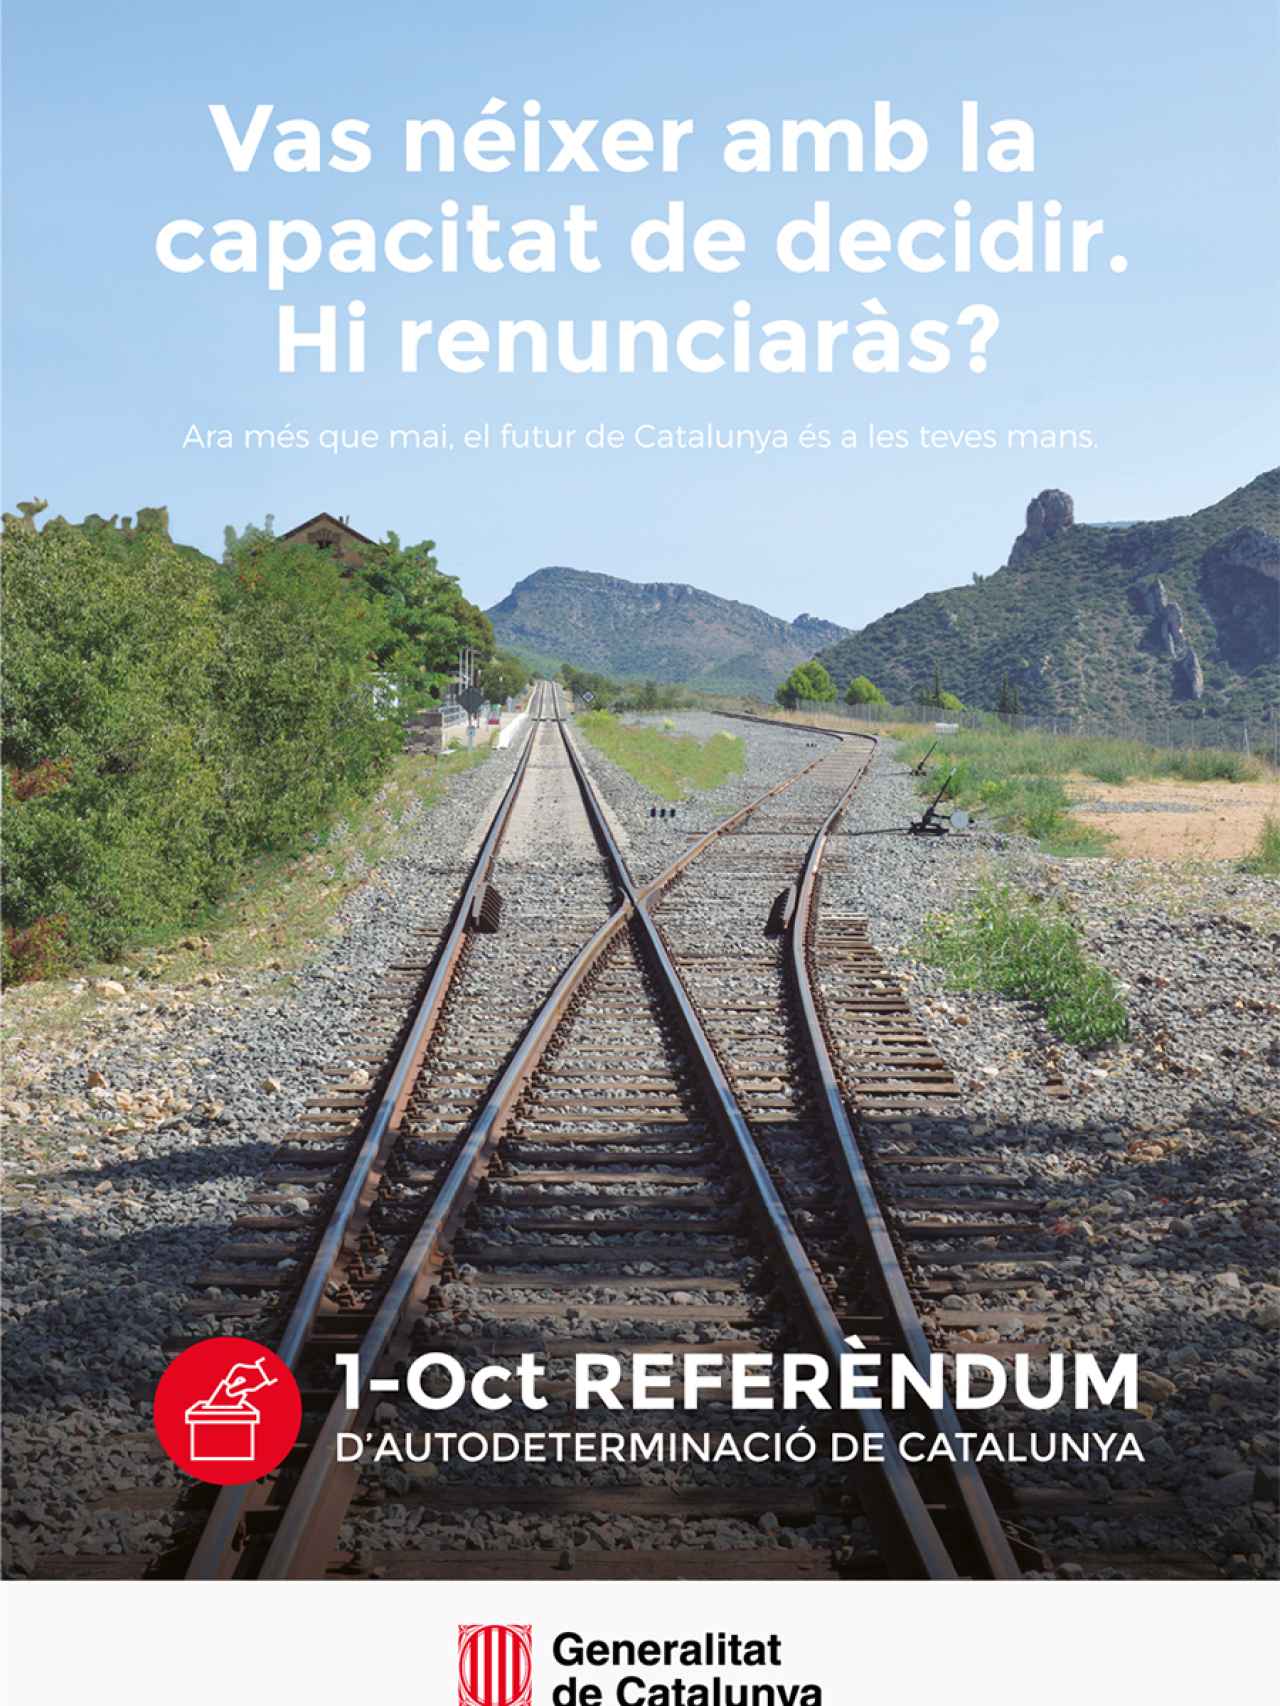 Cartel de promoción del referéndum./